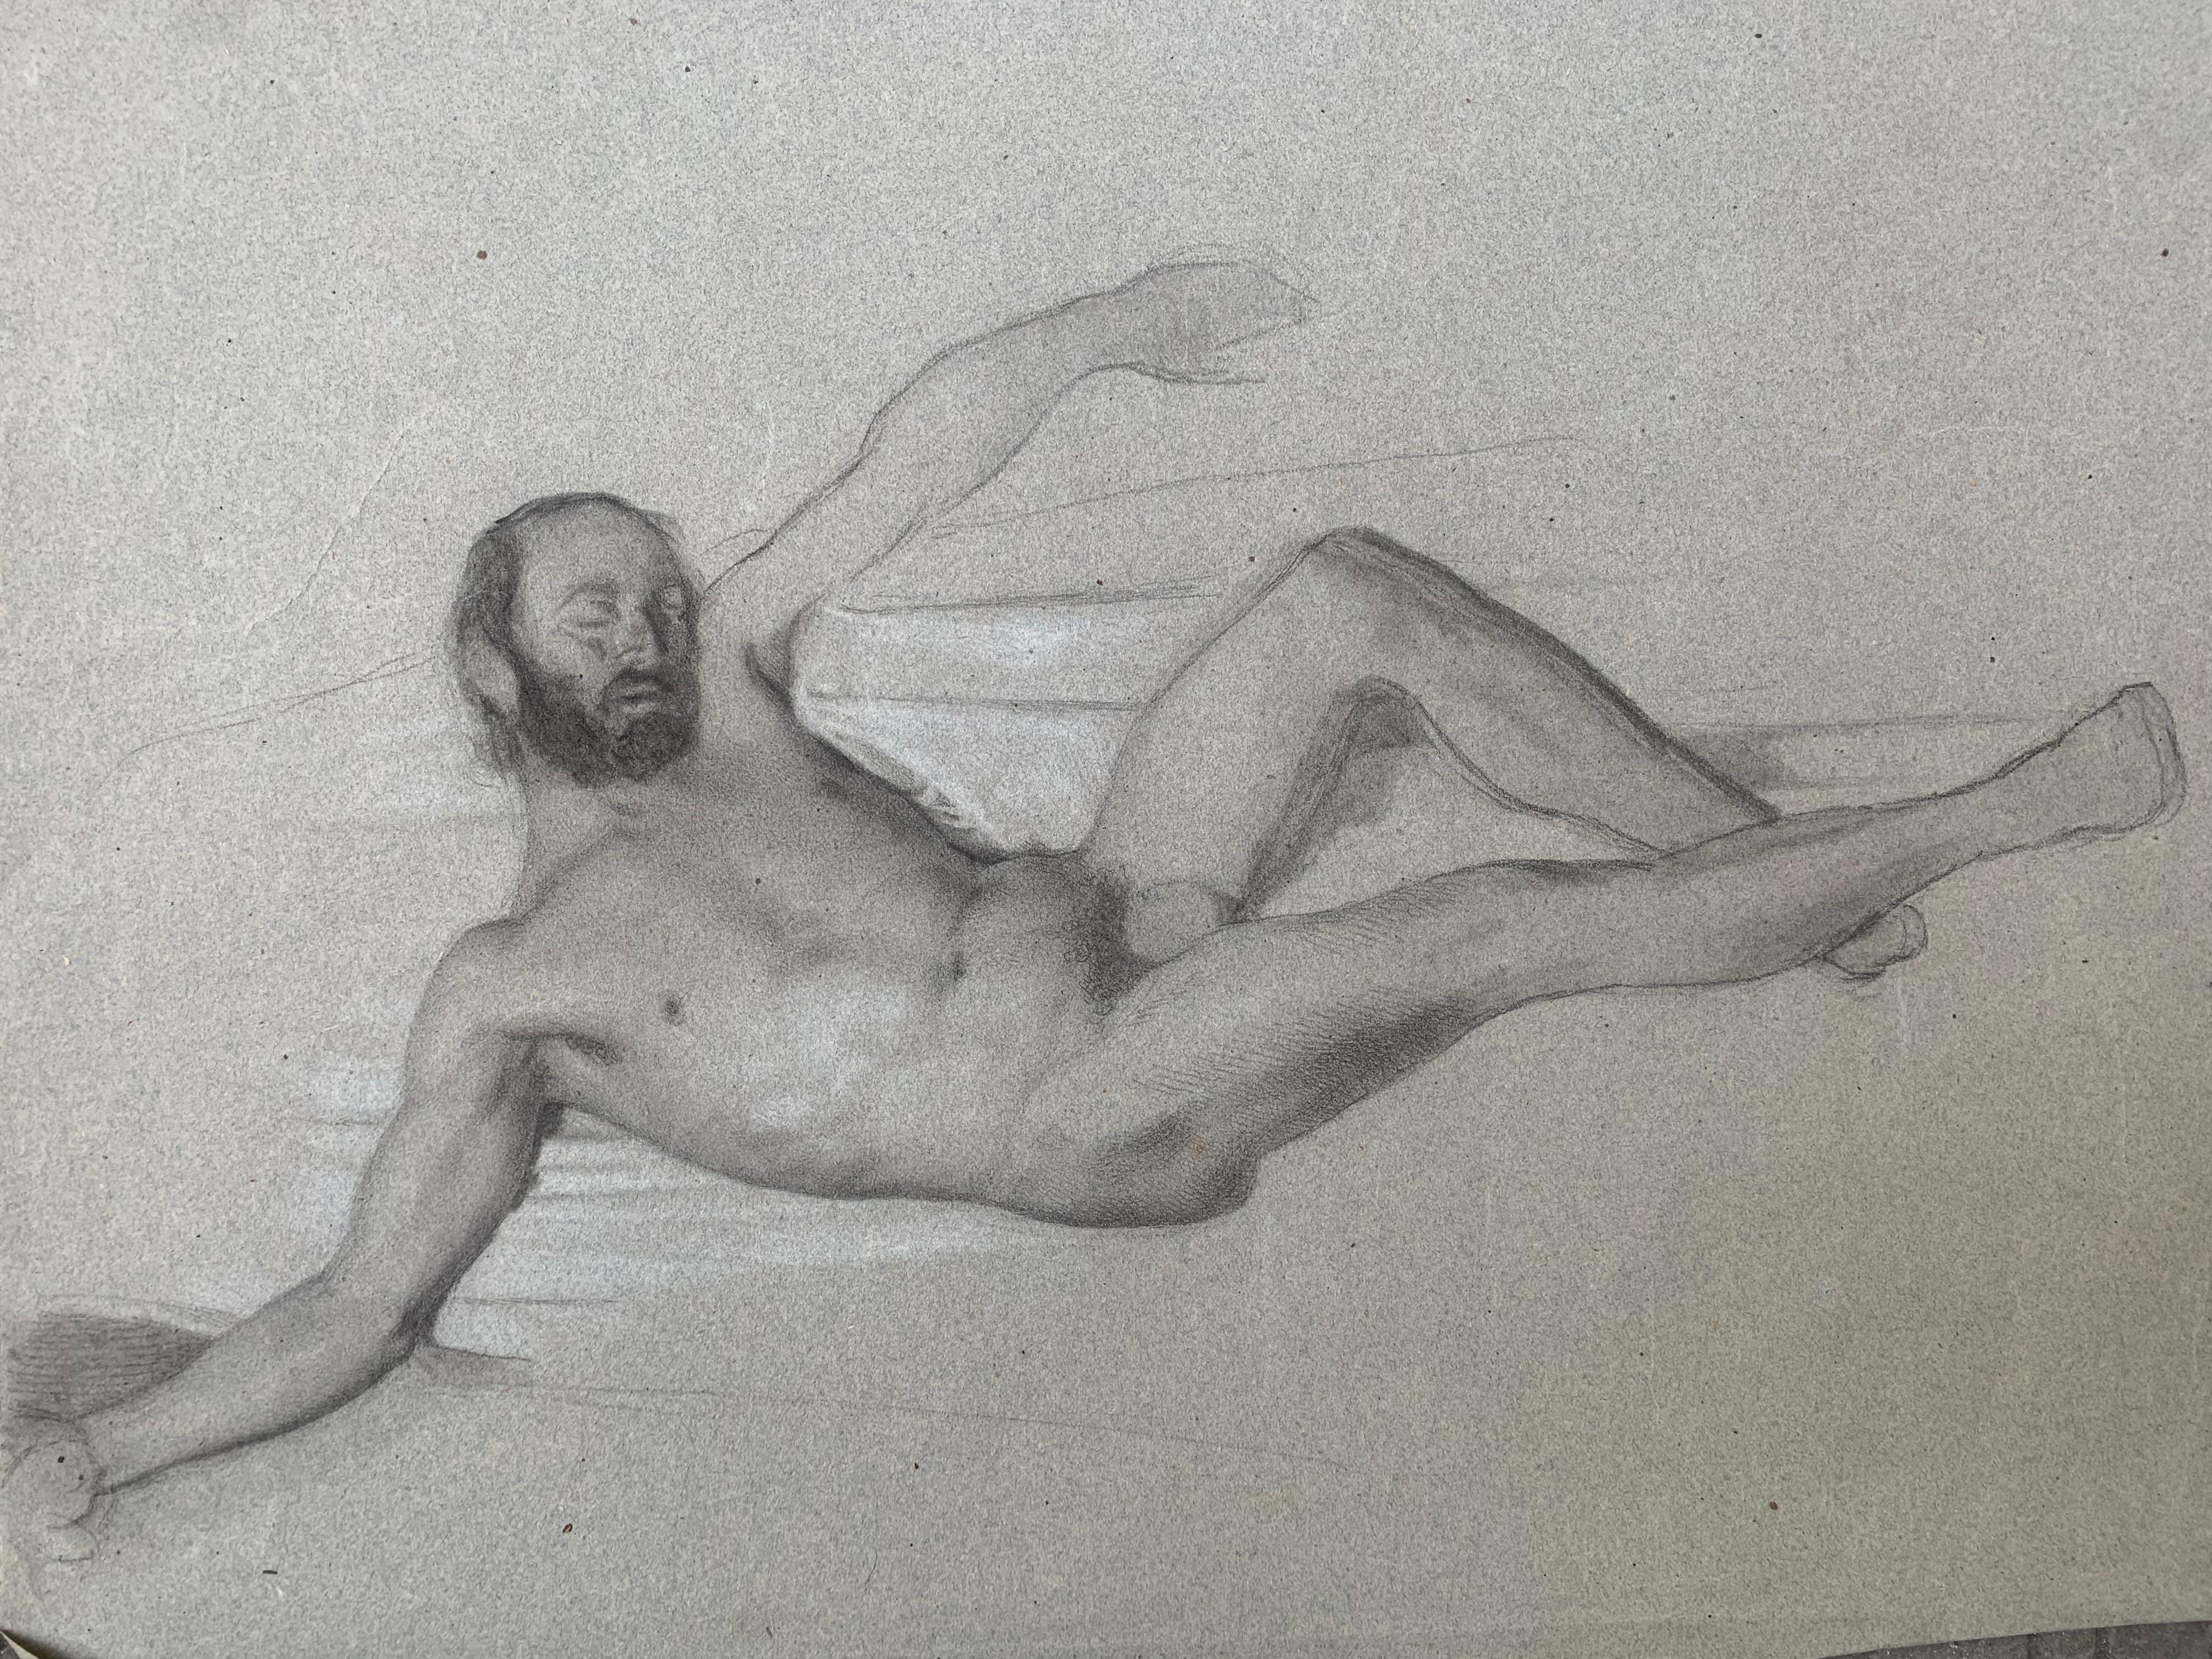 Disegno del nudo maschile.
Dal 19 ° secolo
Disegno su carta leggermente colorata.
In buone condizioni.
Il disegno rappresenta un uomo sdraiato, che si abbandona al sonno.
In una posa libera, che ricorda la scultura classica di un satiro